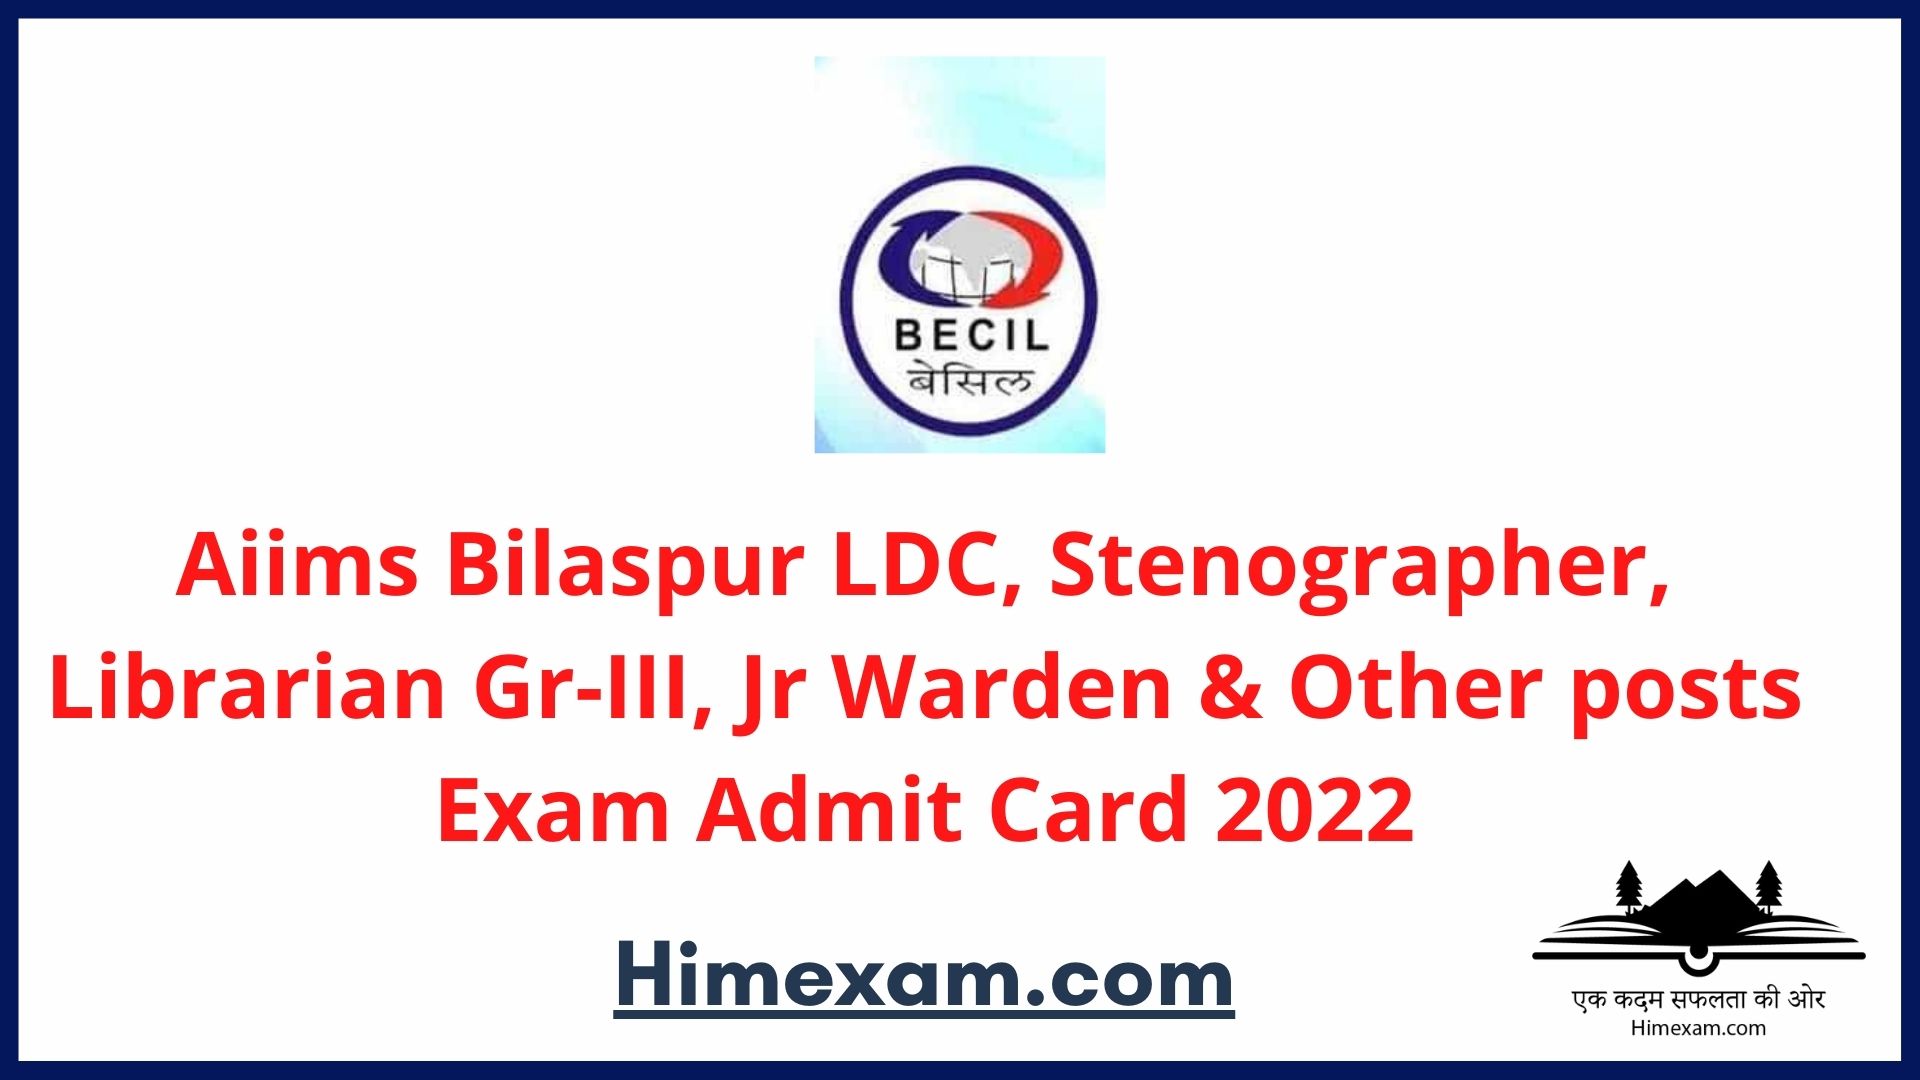 Aiims Bilaspur LDC, Stenographer, Librarian Gr-III, Jr Warden & Other posts Exam Admit Card 2022